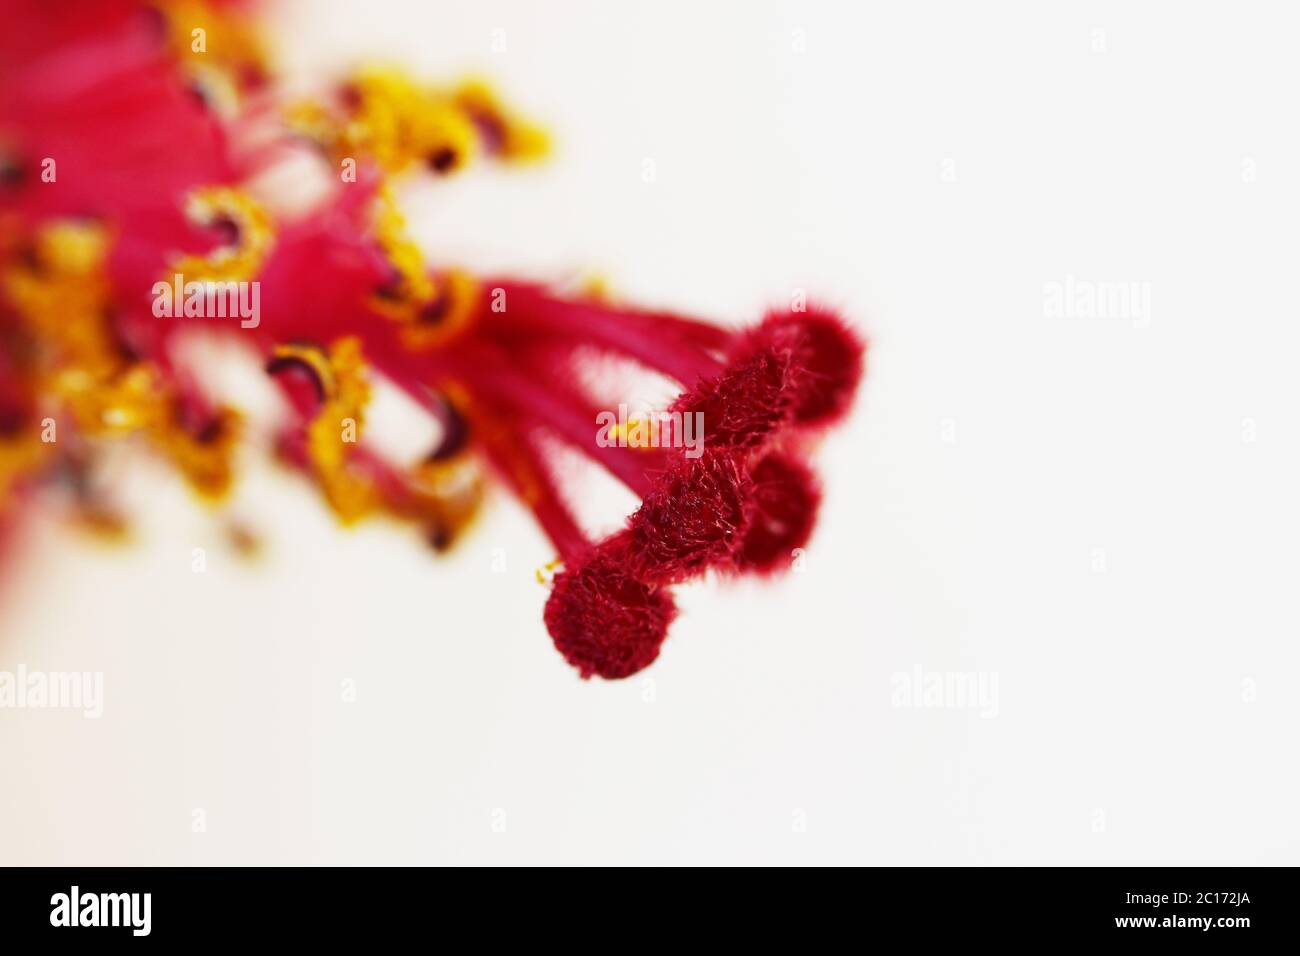 Macro rosso pistil e giallo fiore stami hibiscus famiglia Malvaceaeon sfondo bianco. Foto Stock